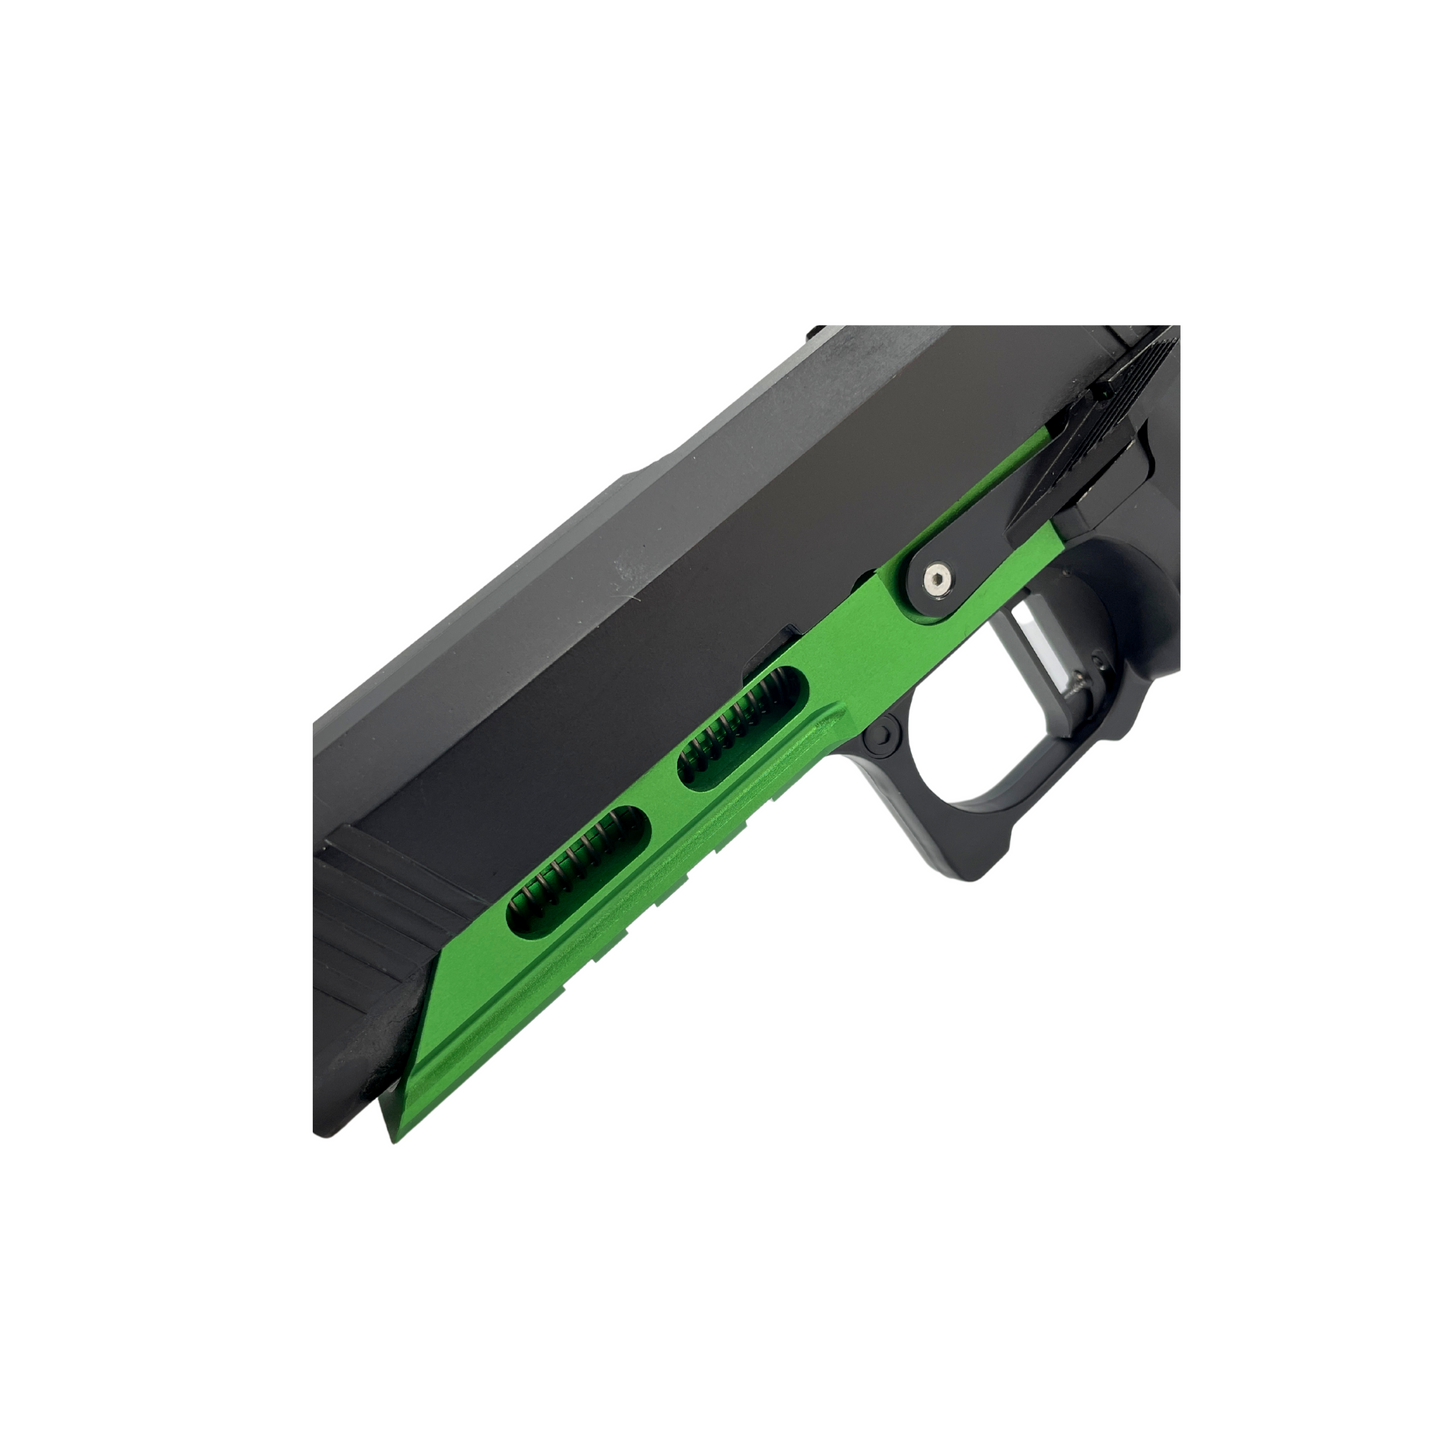 "Blade" 4.3 Custom GBU Pistol - Gel Blaster